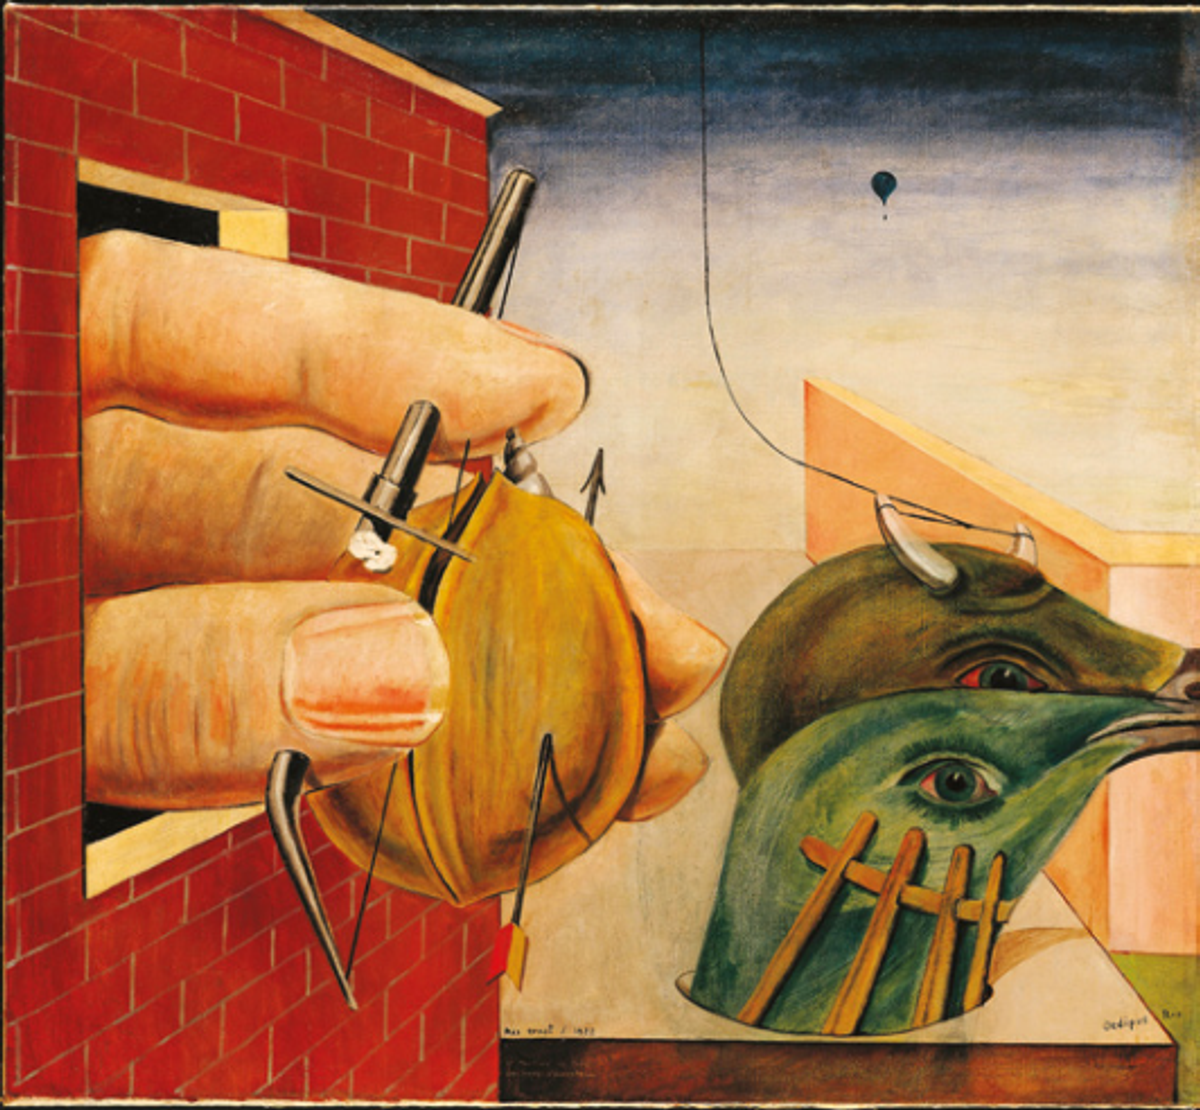 Max Ernst, Oedipus Rex, 1922, huile sur toile, collection particulière.
© Max Ernst by SIAE 2022. Courtesy Fine Arts Images/Mondadori Portfolio